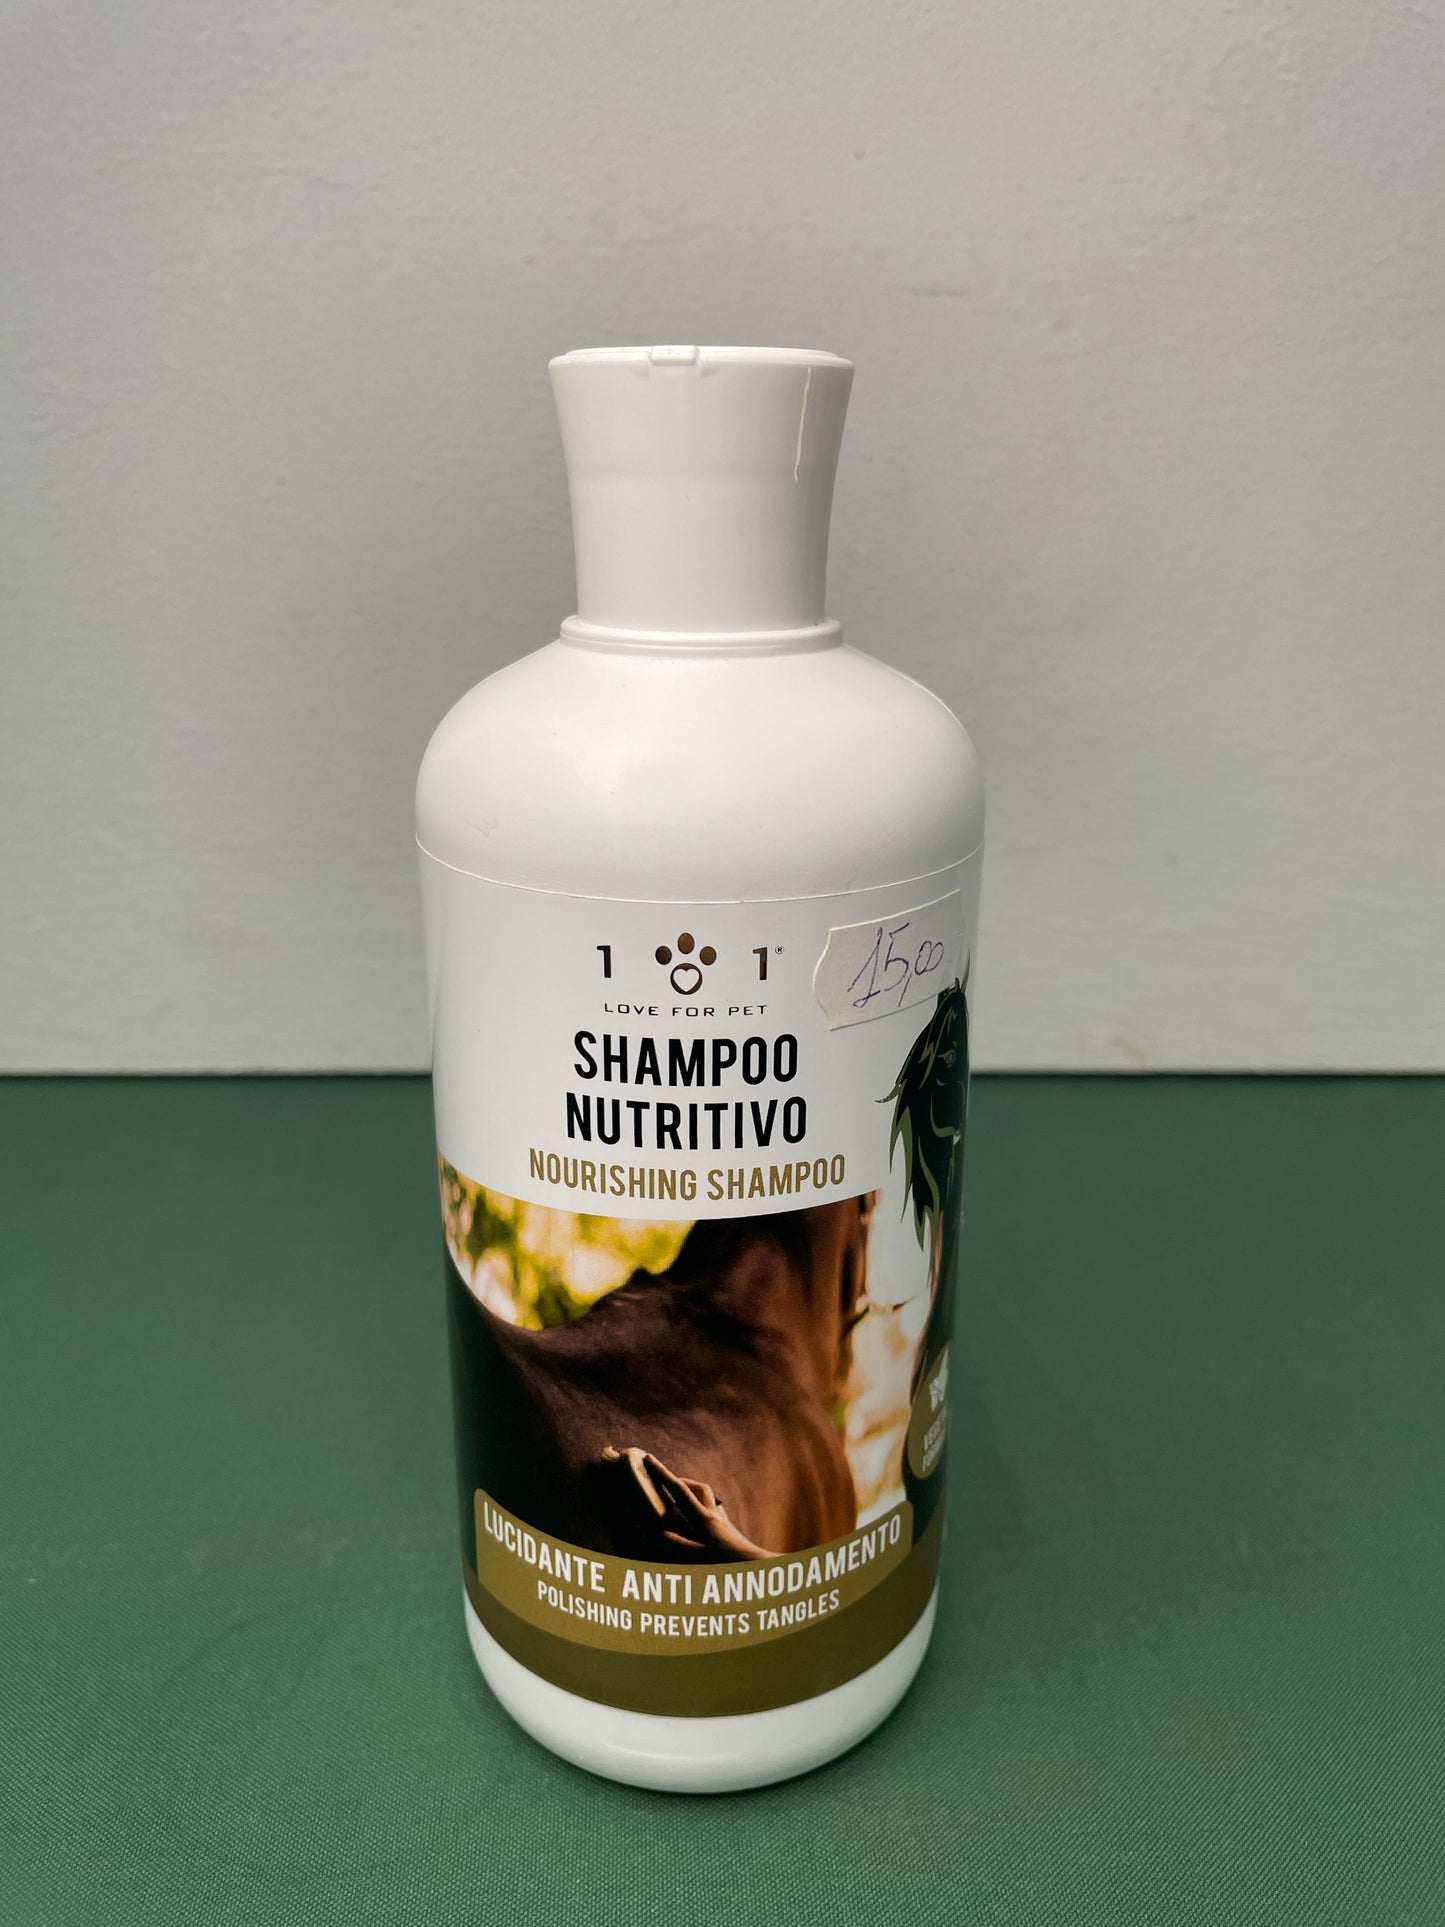 Linea 101 - Shampoo NUTRITIVO per la Criniera dei Cavalli con Camomilla 500ml